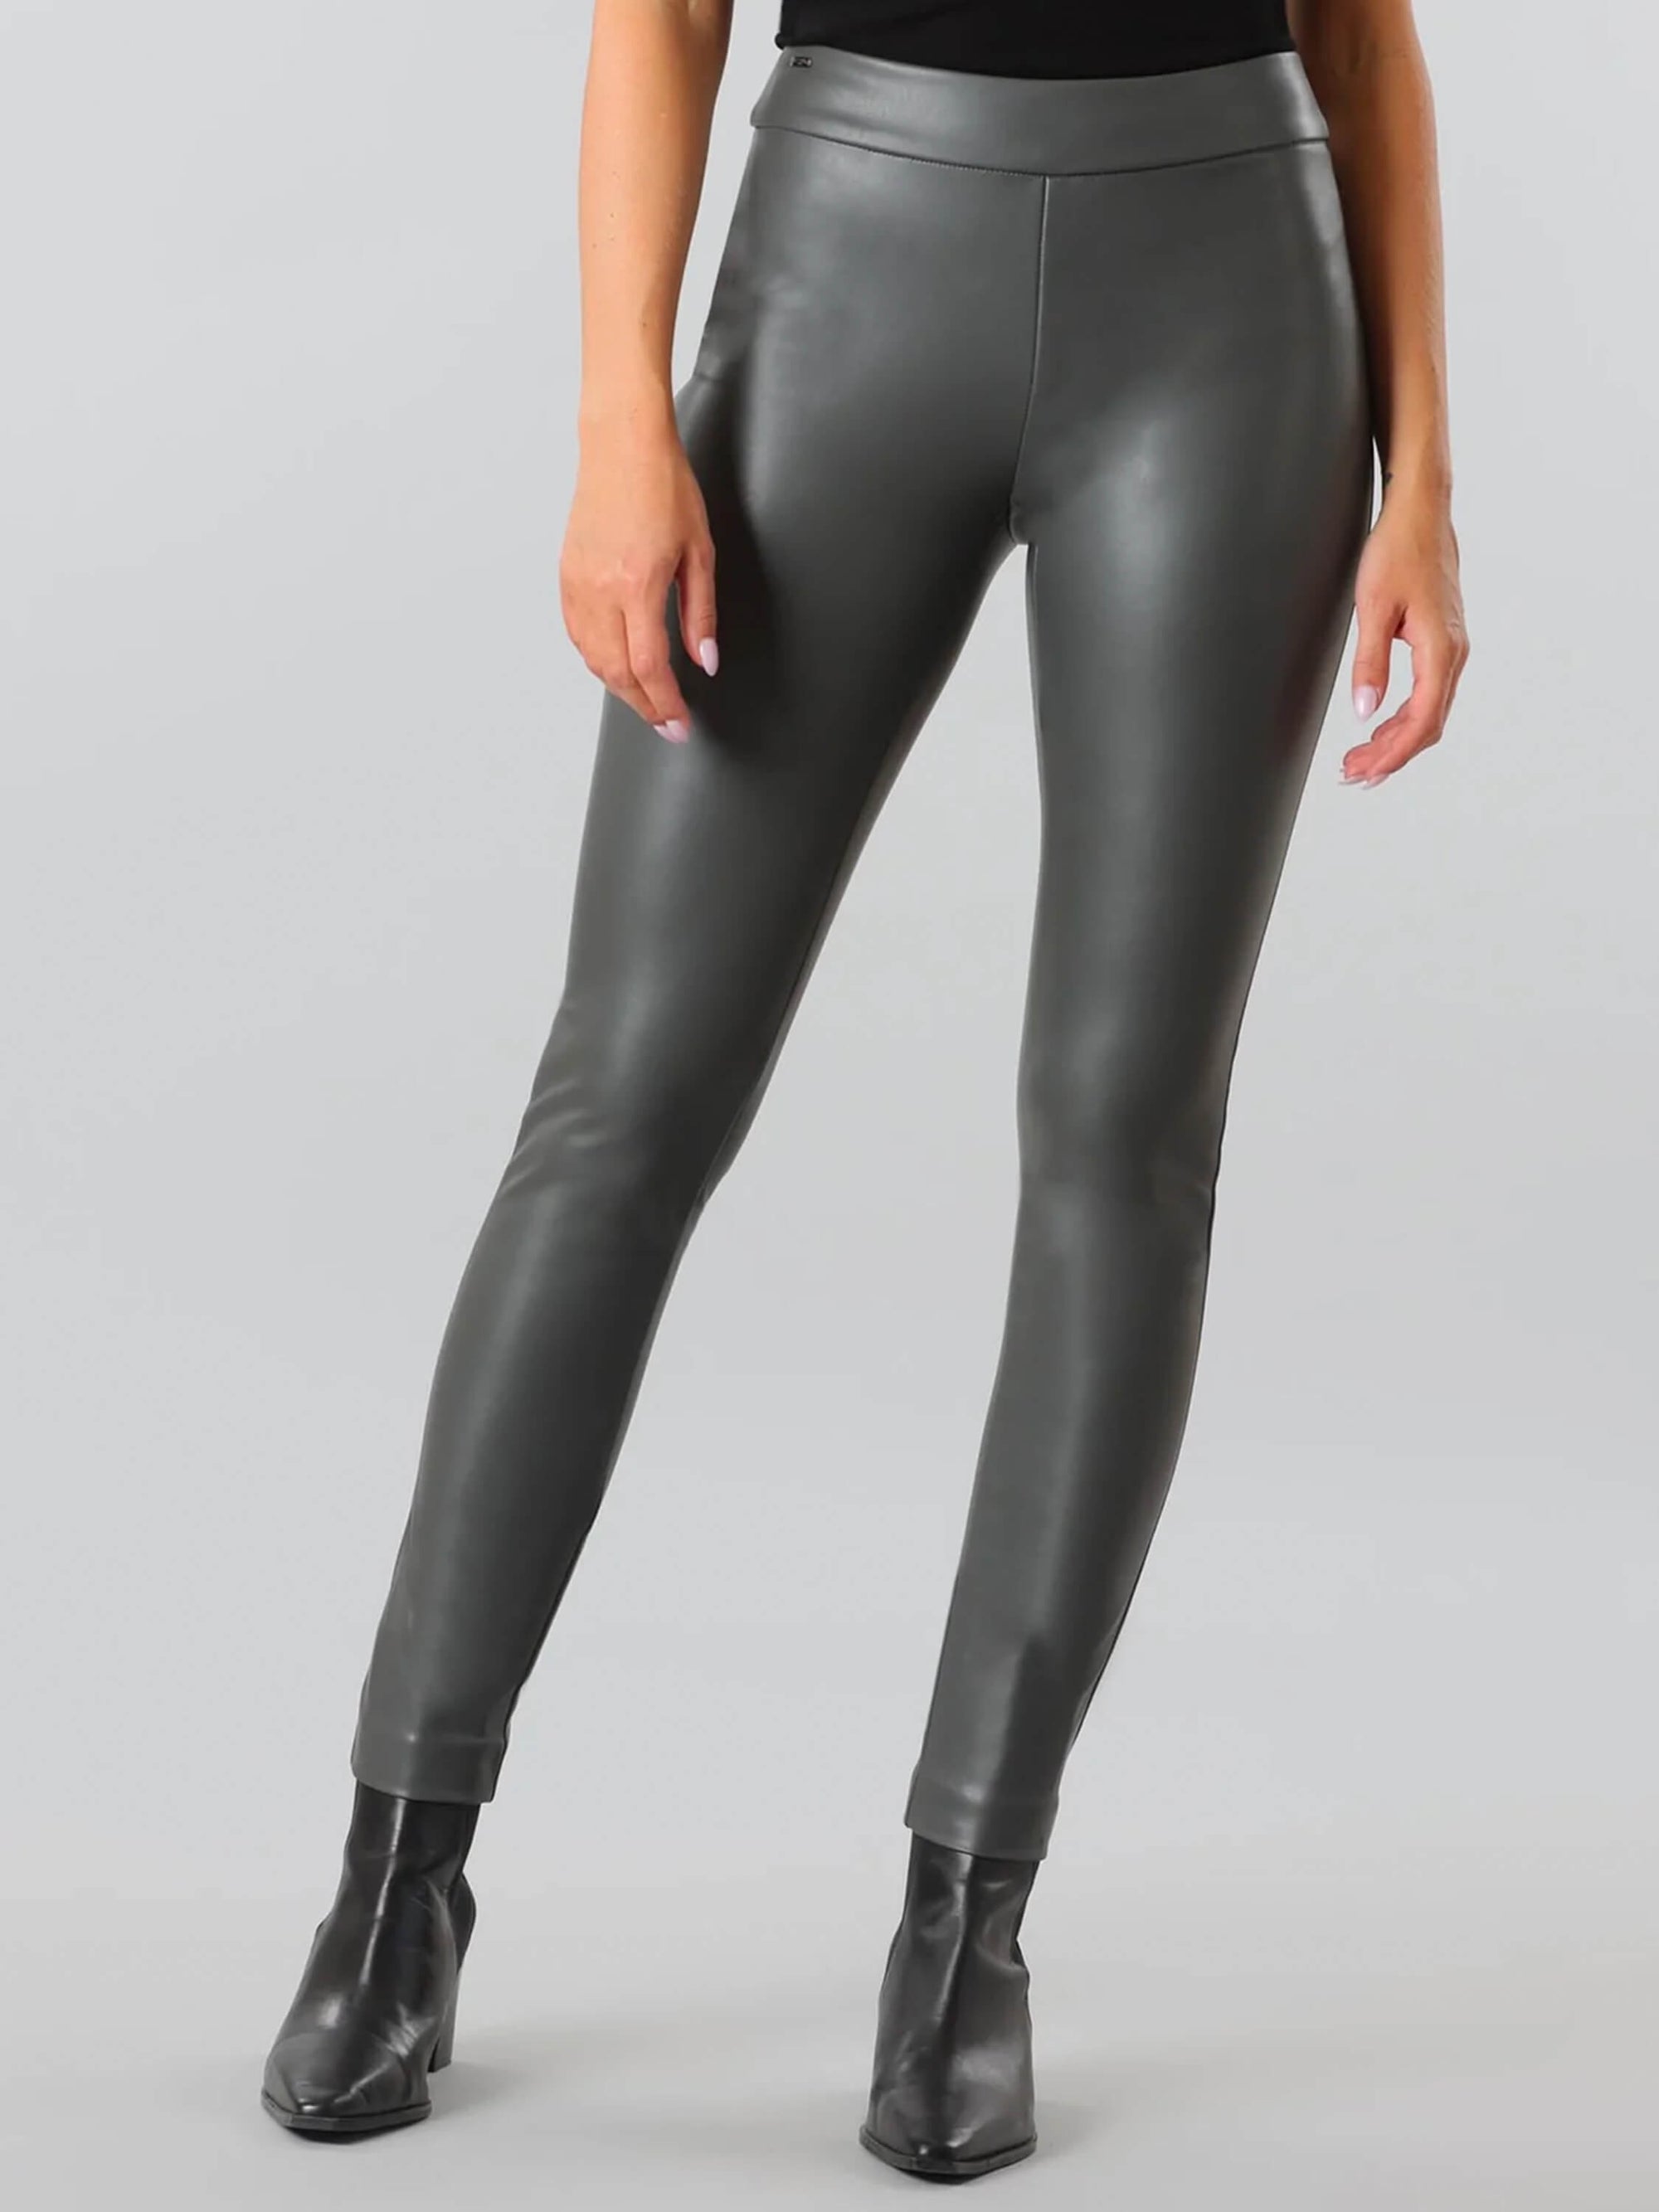 Lisette – Verona Vegan Leather Thinny Pant